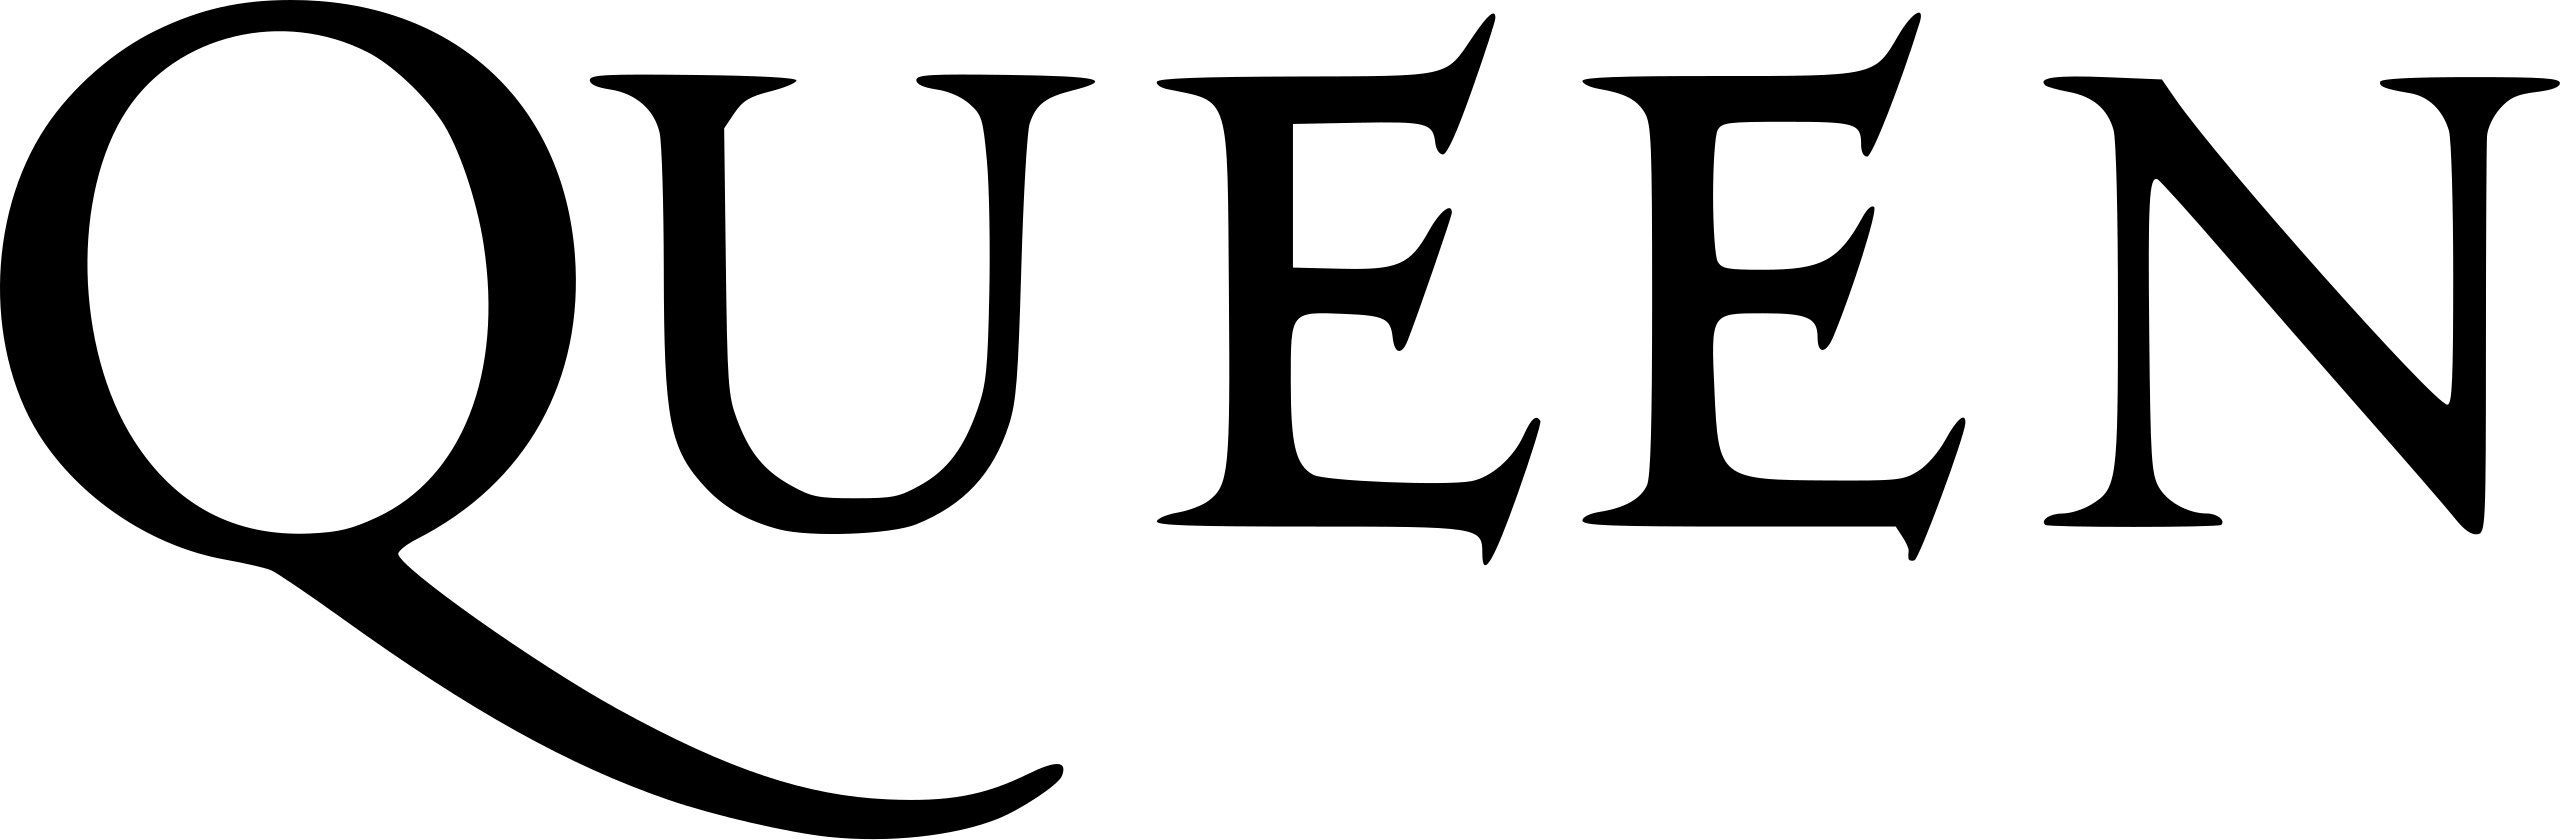 پرونده:Queen logo.svg - ویکی‌پدیا، دانشنامهٔ آزاد